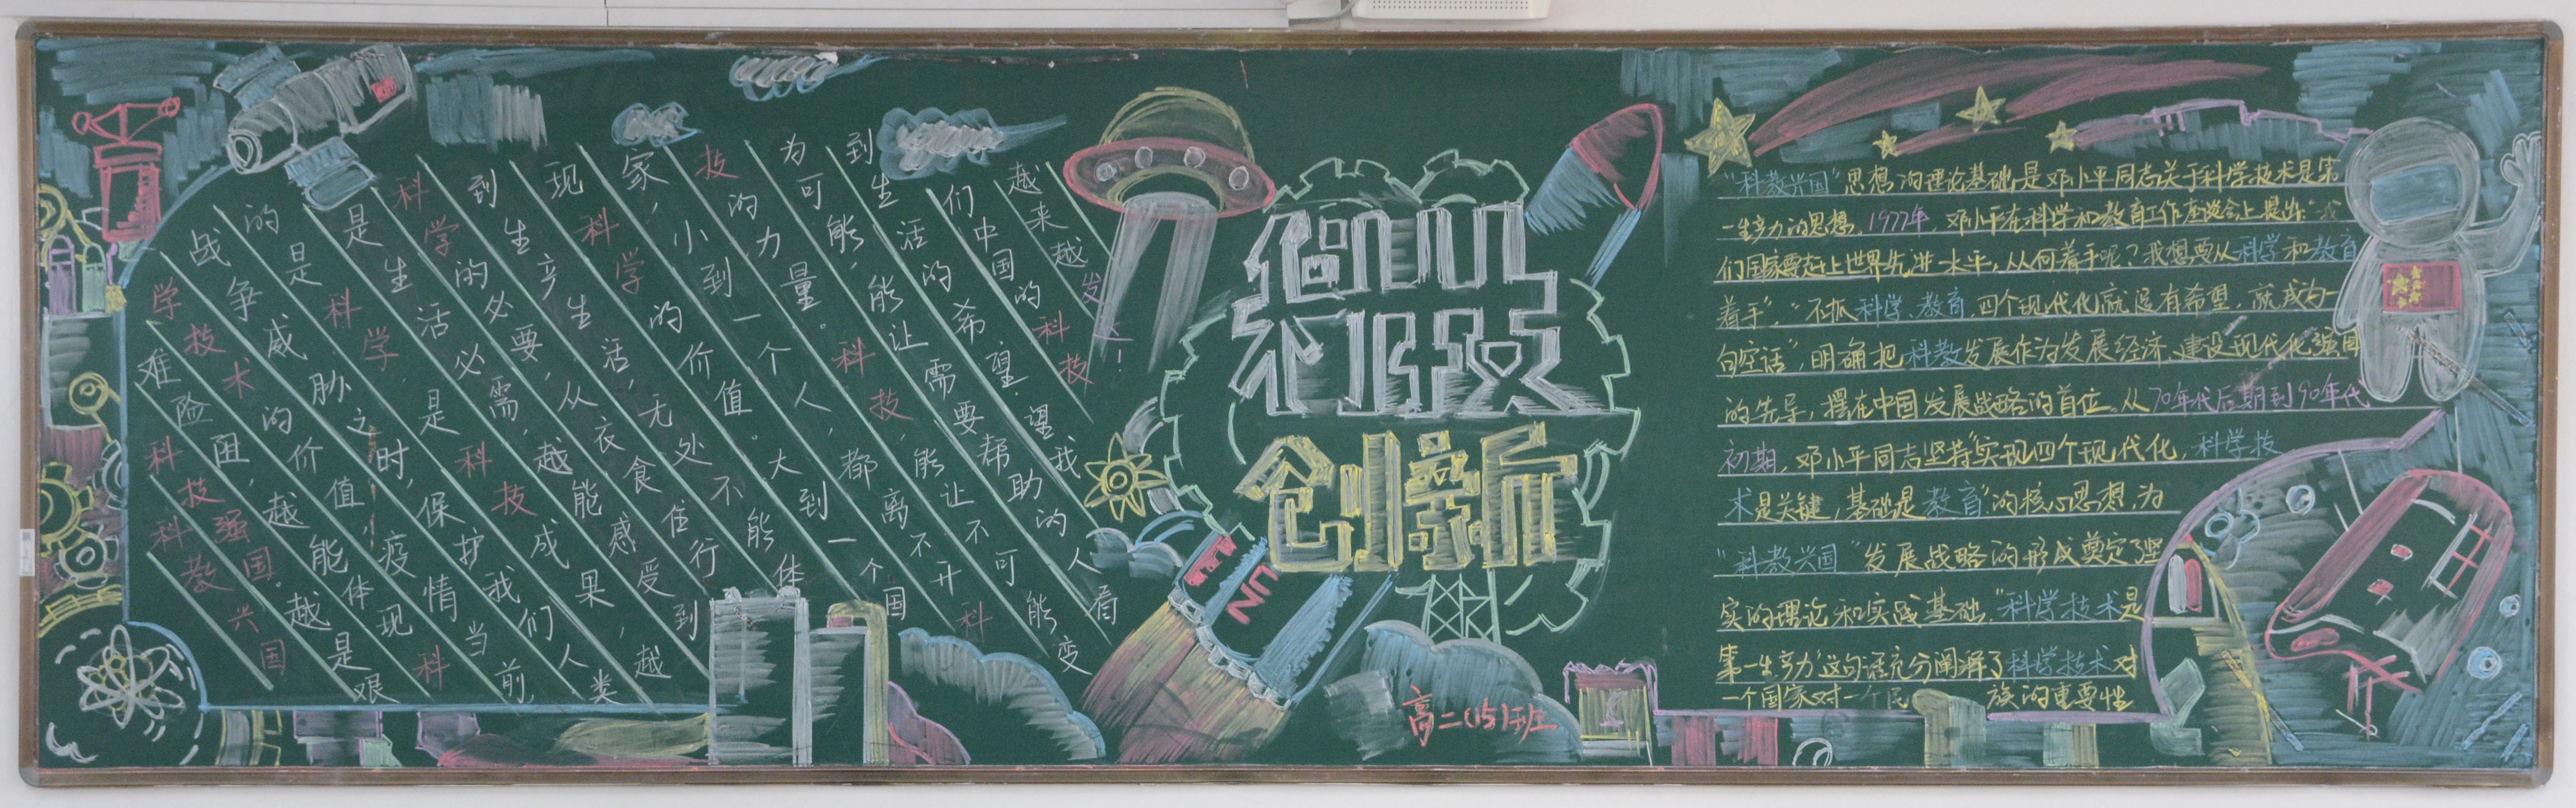 罗塘高中举行"科技托起强国梦"主题黑板报评比